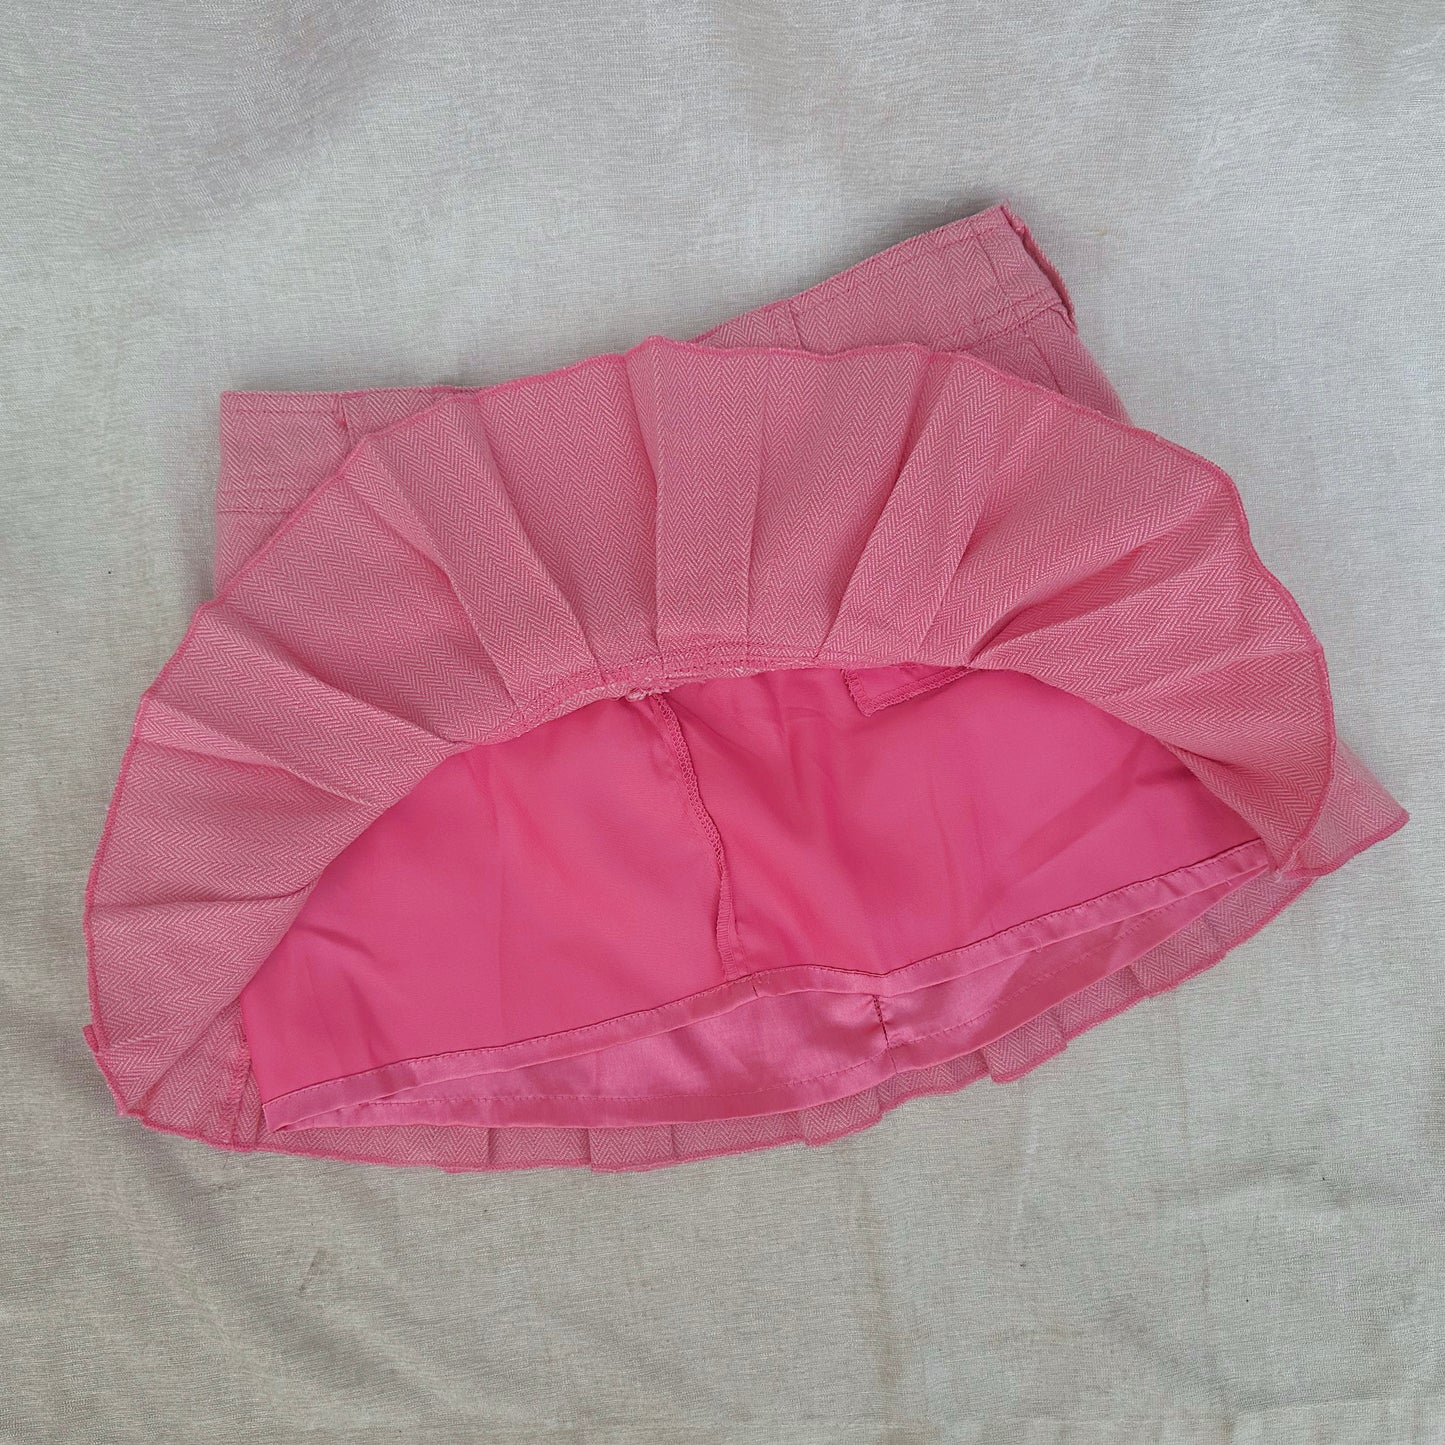 Y2K Aeropostale Pink Pleated Mini Skirt / SZ 0